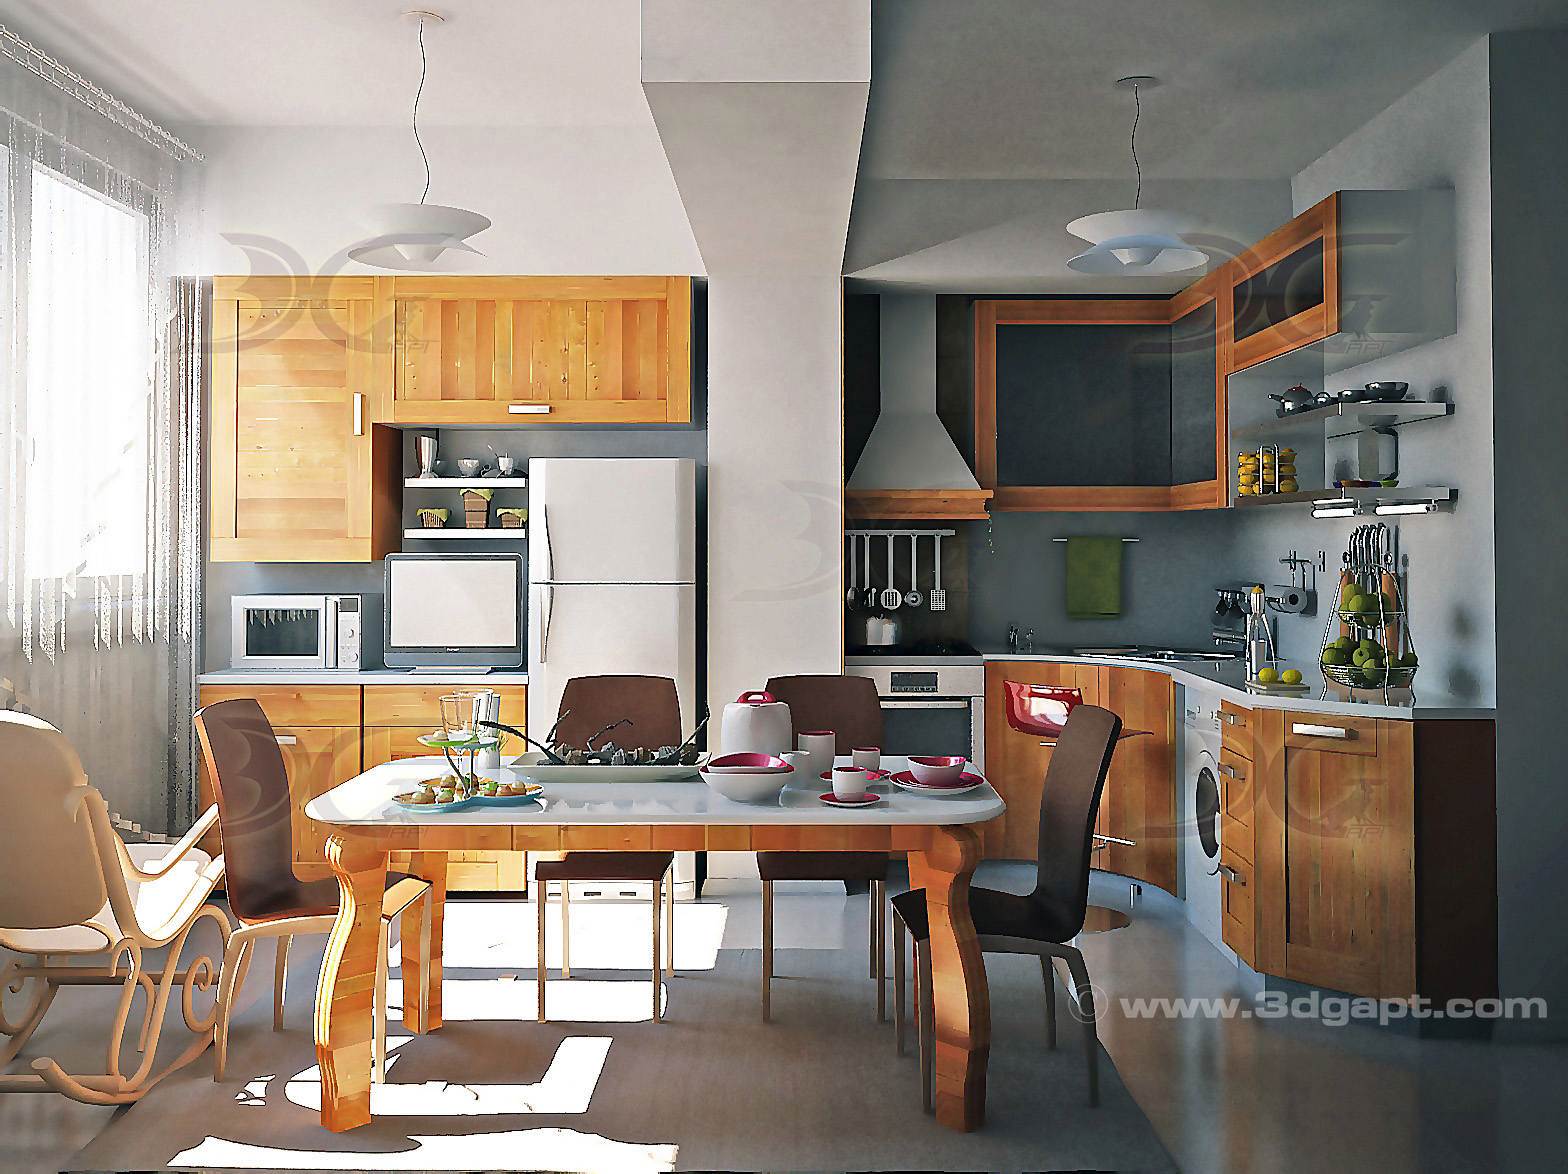 architecture interior kitchen-3versions 2